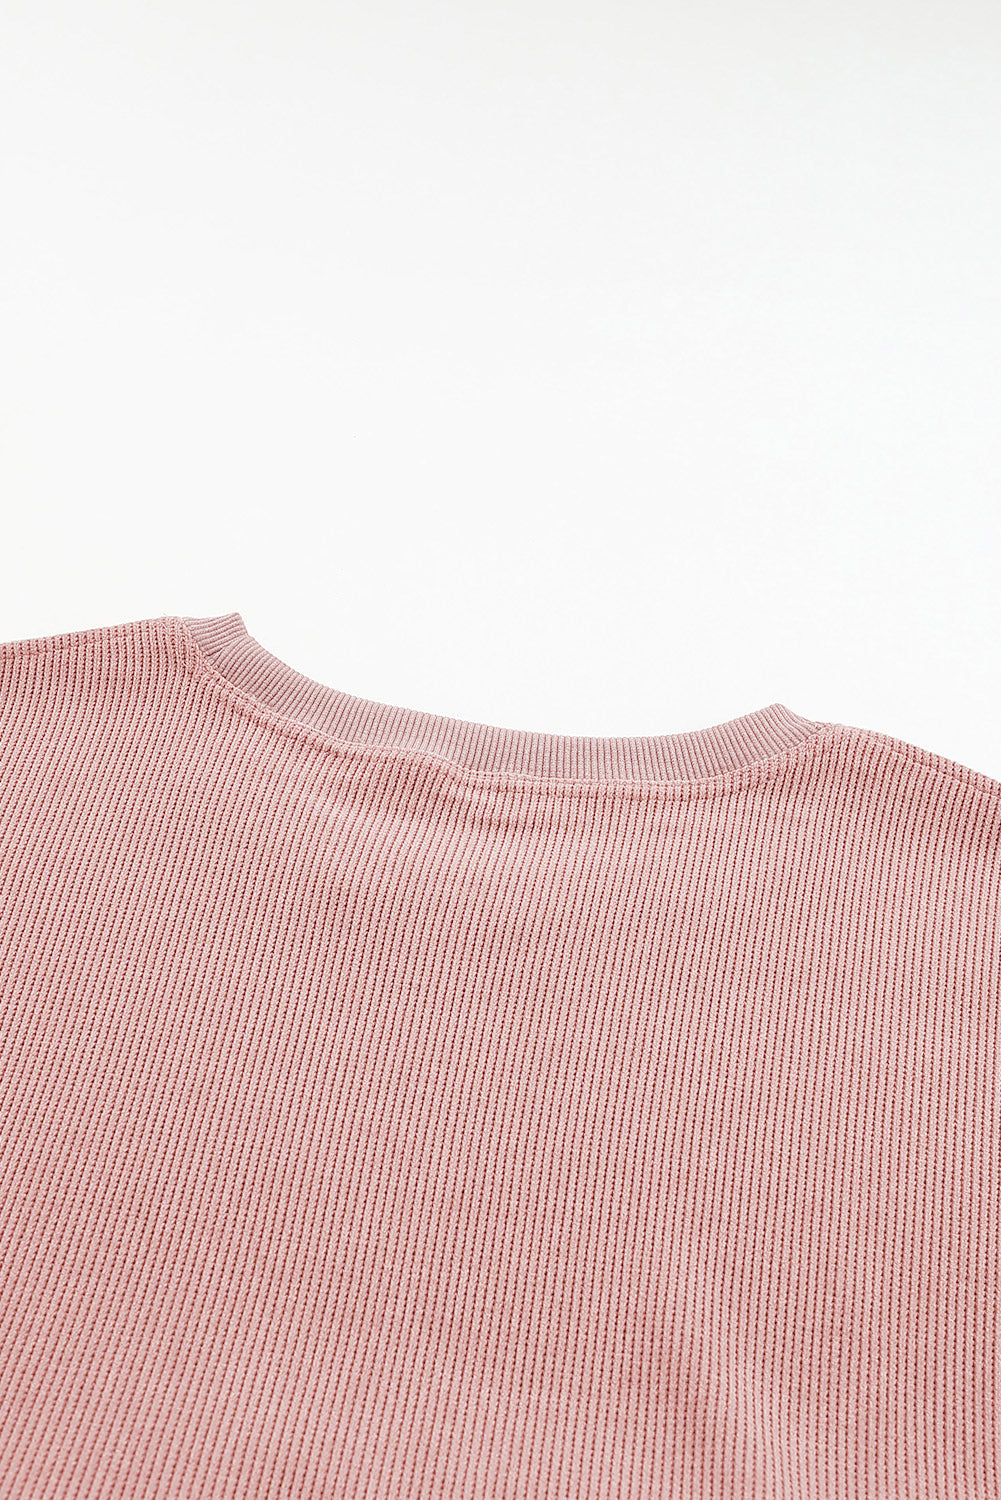 Ružičasta majica s okruglim izrezom na užetu veće veličine